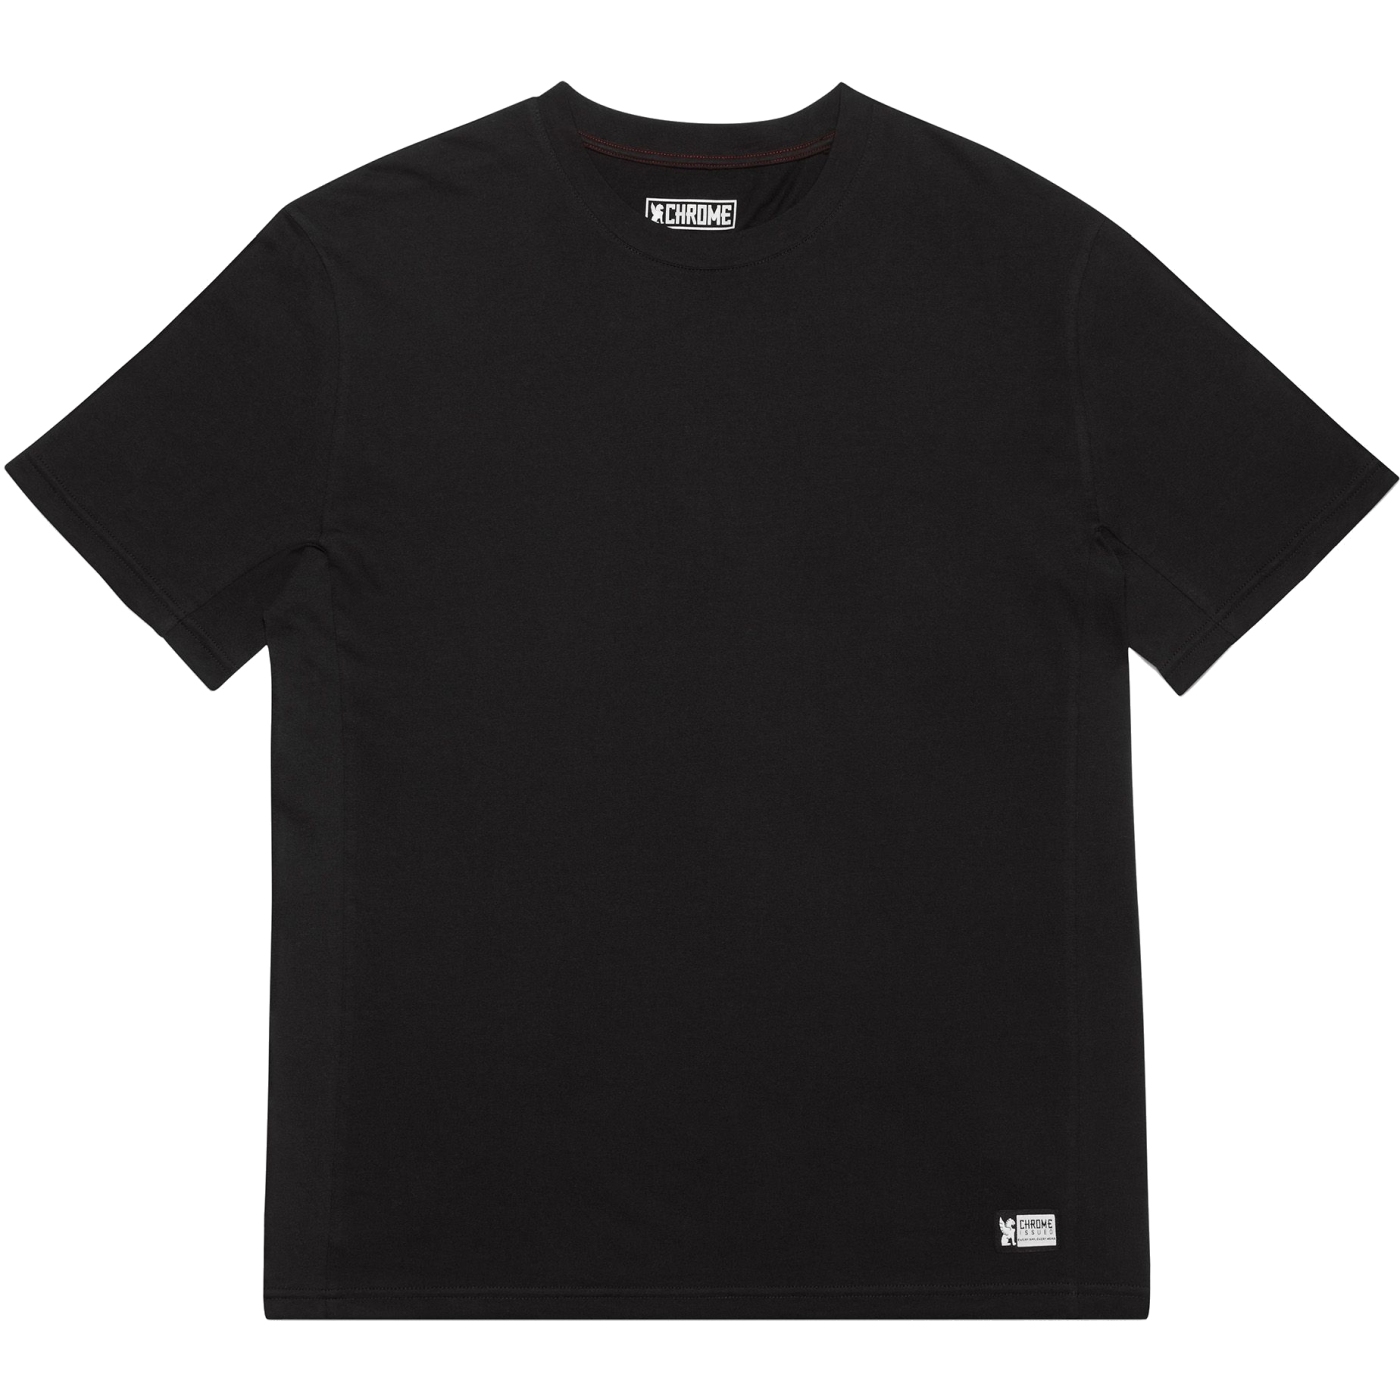 Produktbild von CHROME Issued Short Sleeve Tee T-Shirt - Black